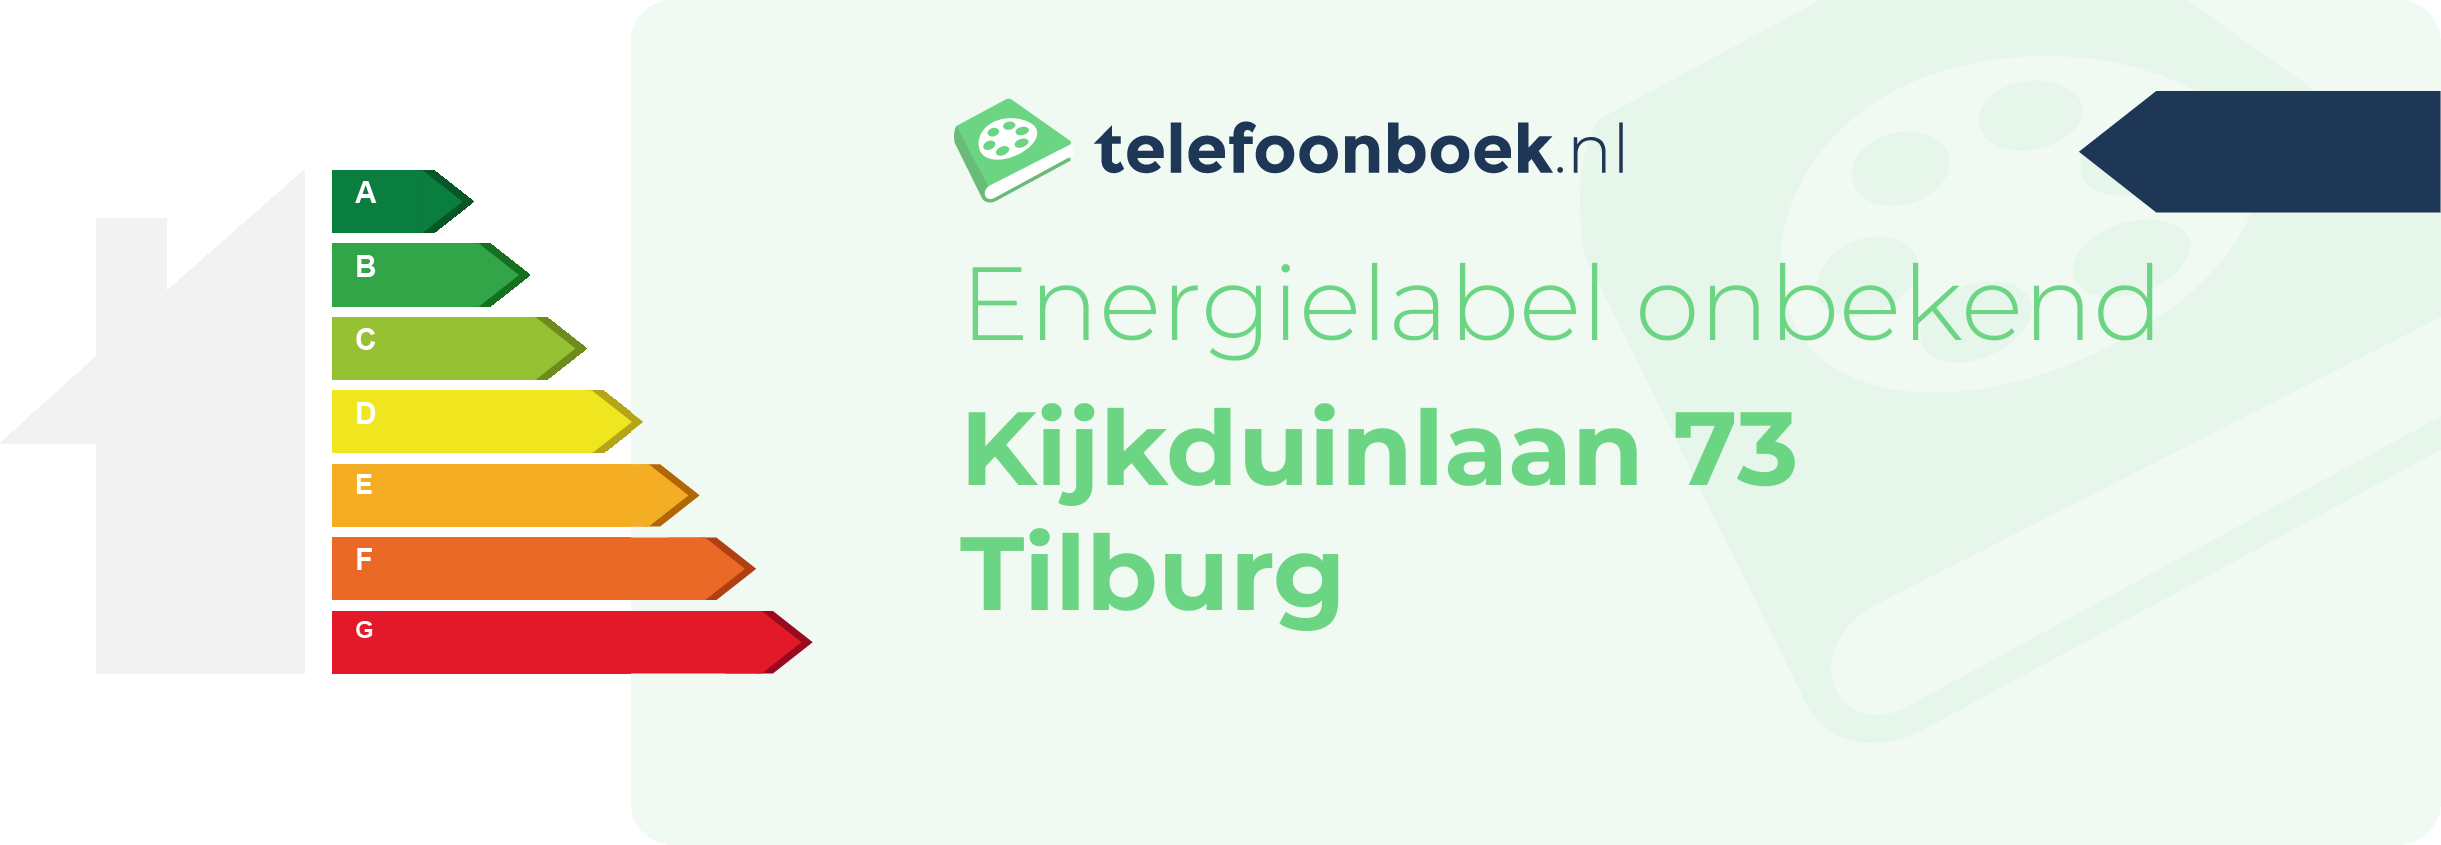 Energielabel Kijkduinlaan 73 Tilburg